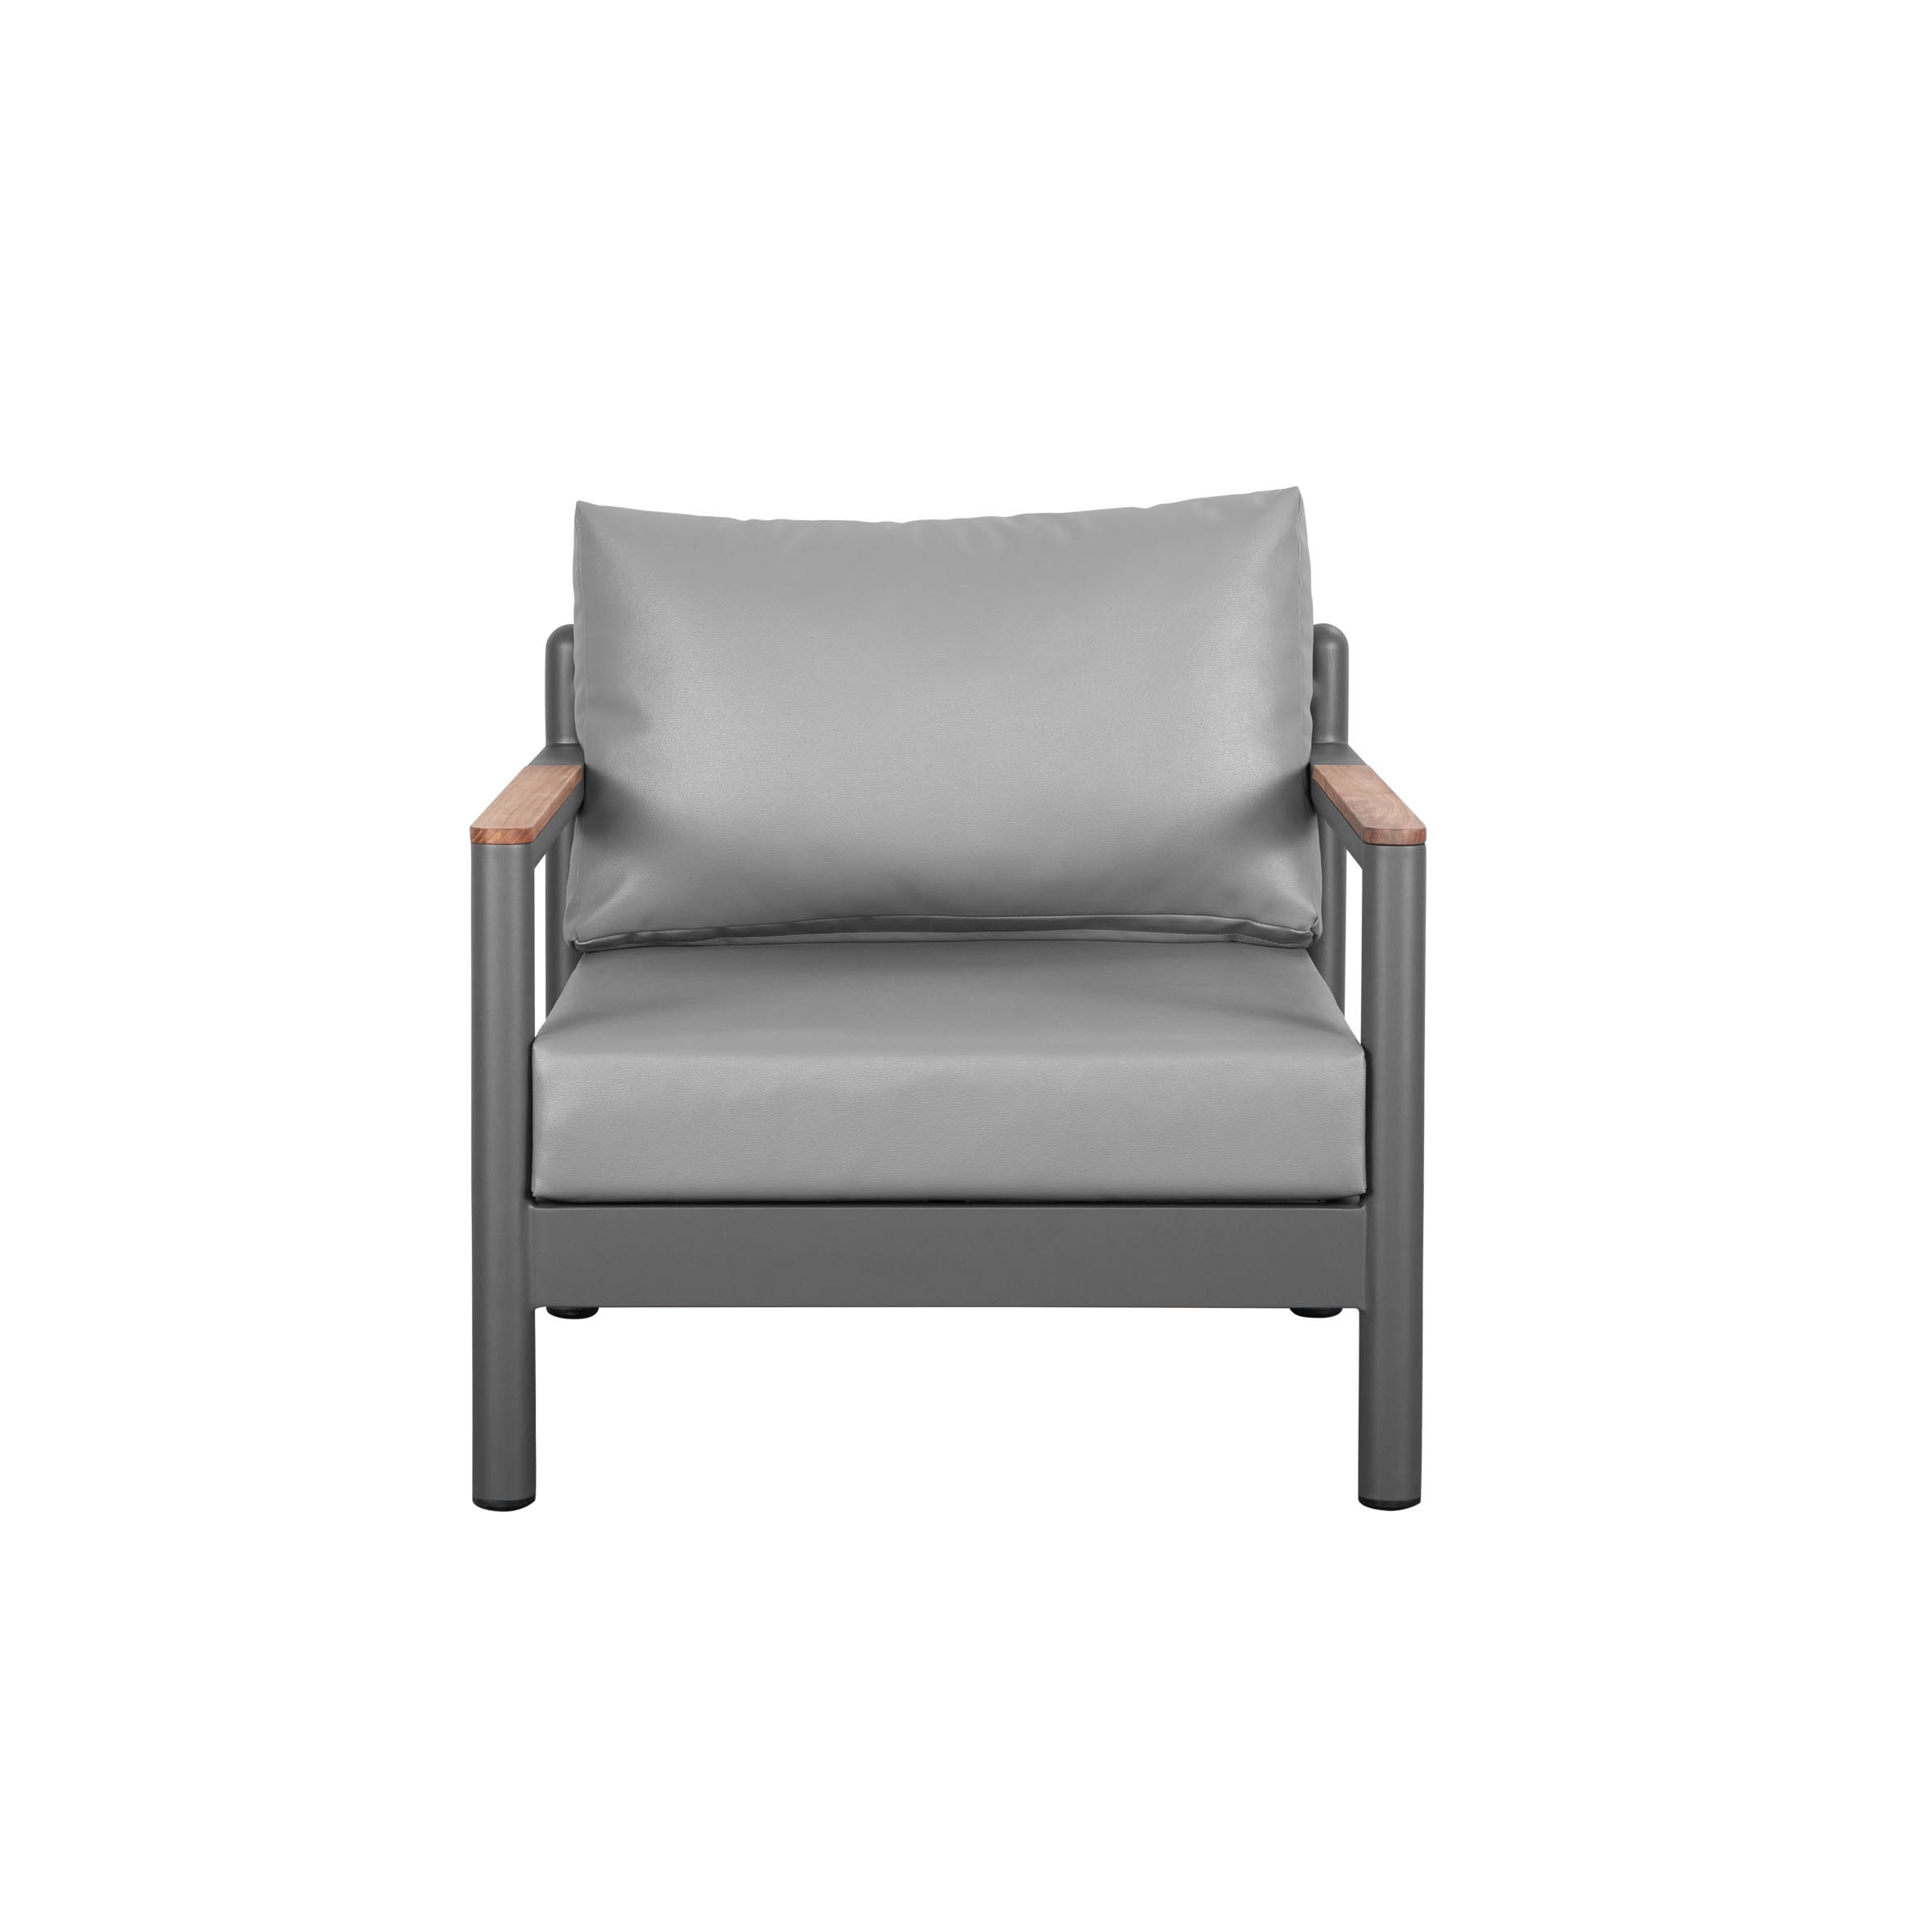 Armani enkelt sofa S3